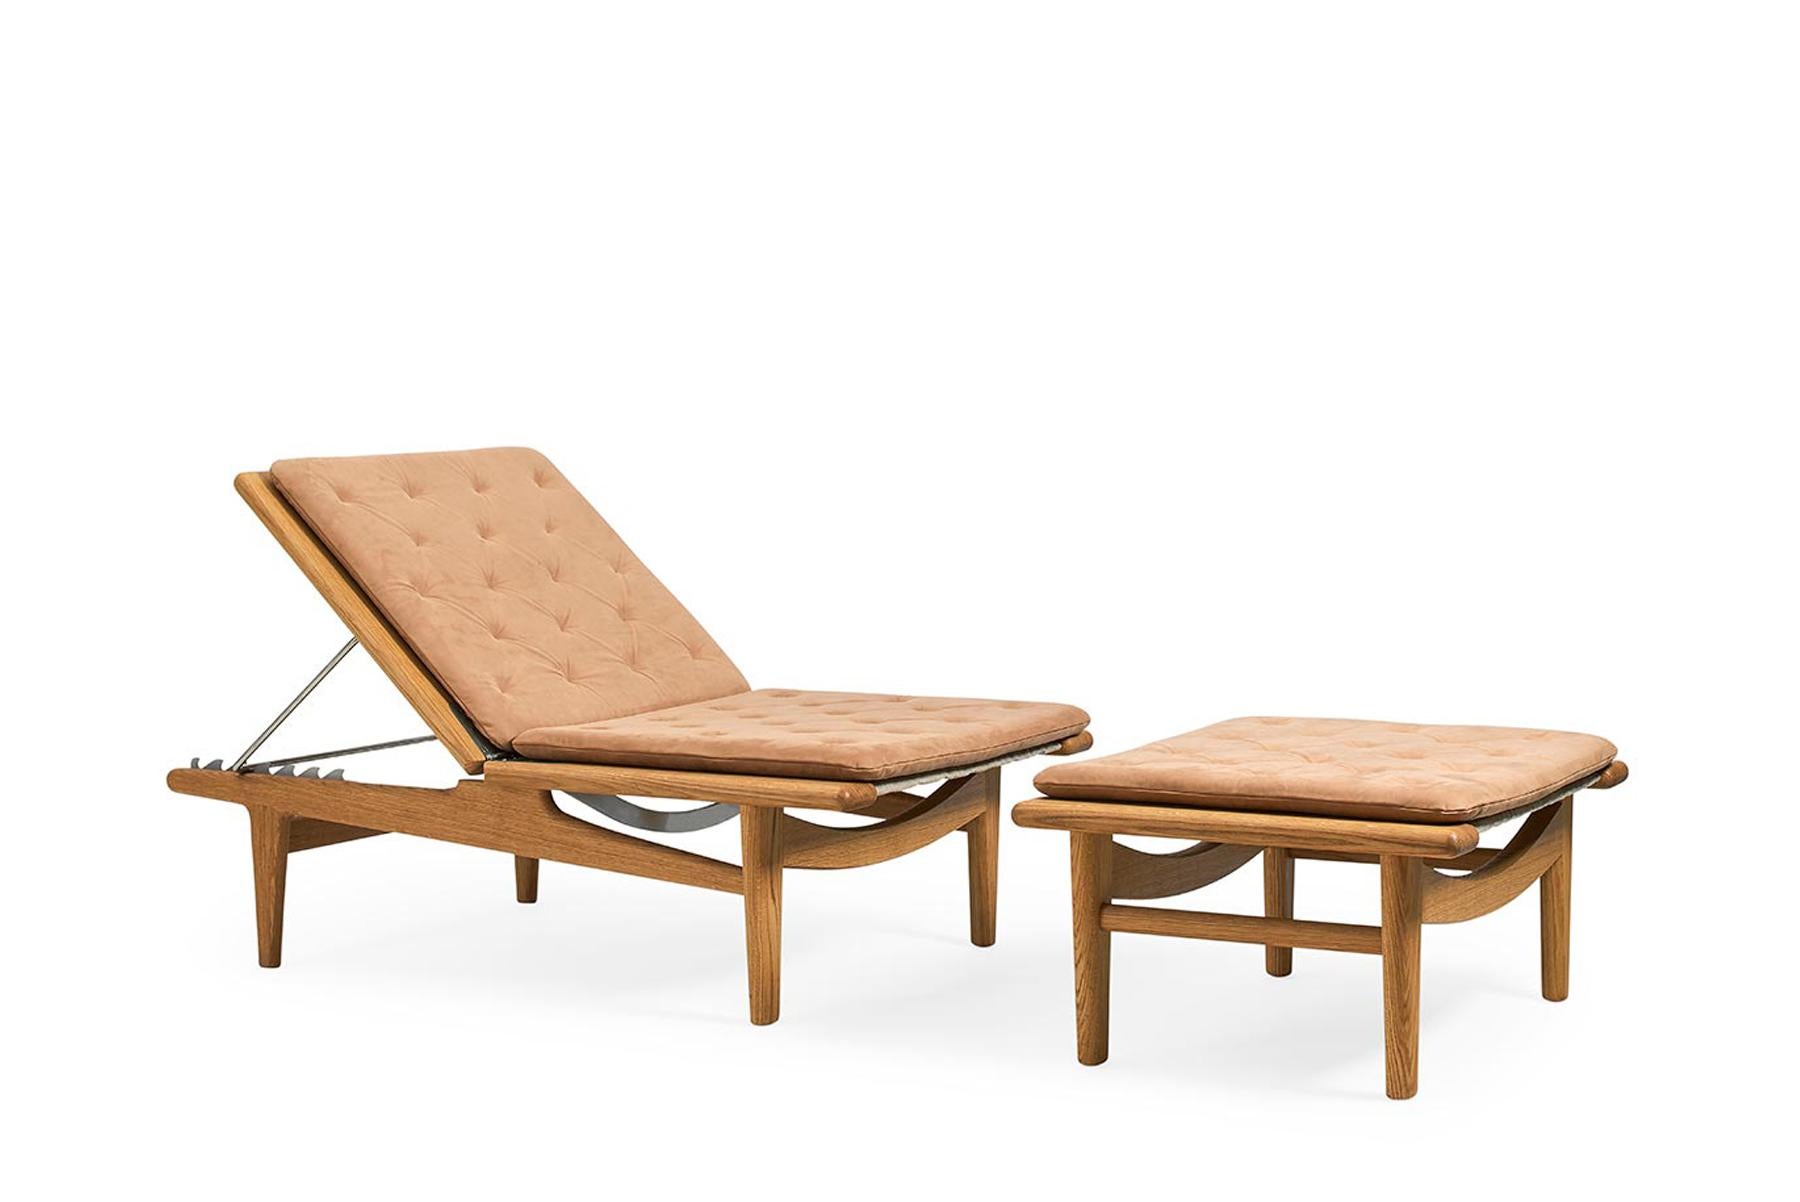 Die 1954 von Hans Wegner entworfene Bank GE 1 ist ein vielseitiges Möbelstück. Eine Seite lässt sich zu einer Rückenlehne verstellen oder für eine flache Sitzbank absenken. Diese Bank aus Massivholz wird in der Getama-Fabrik in Gedsted, Dänemark,